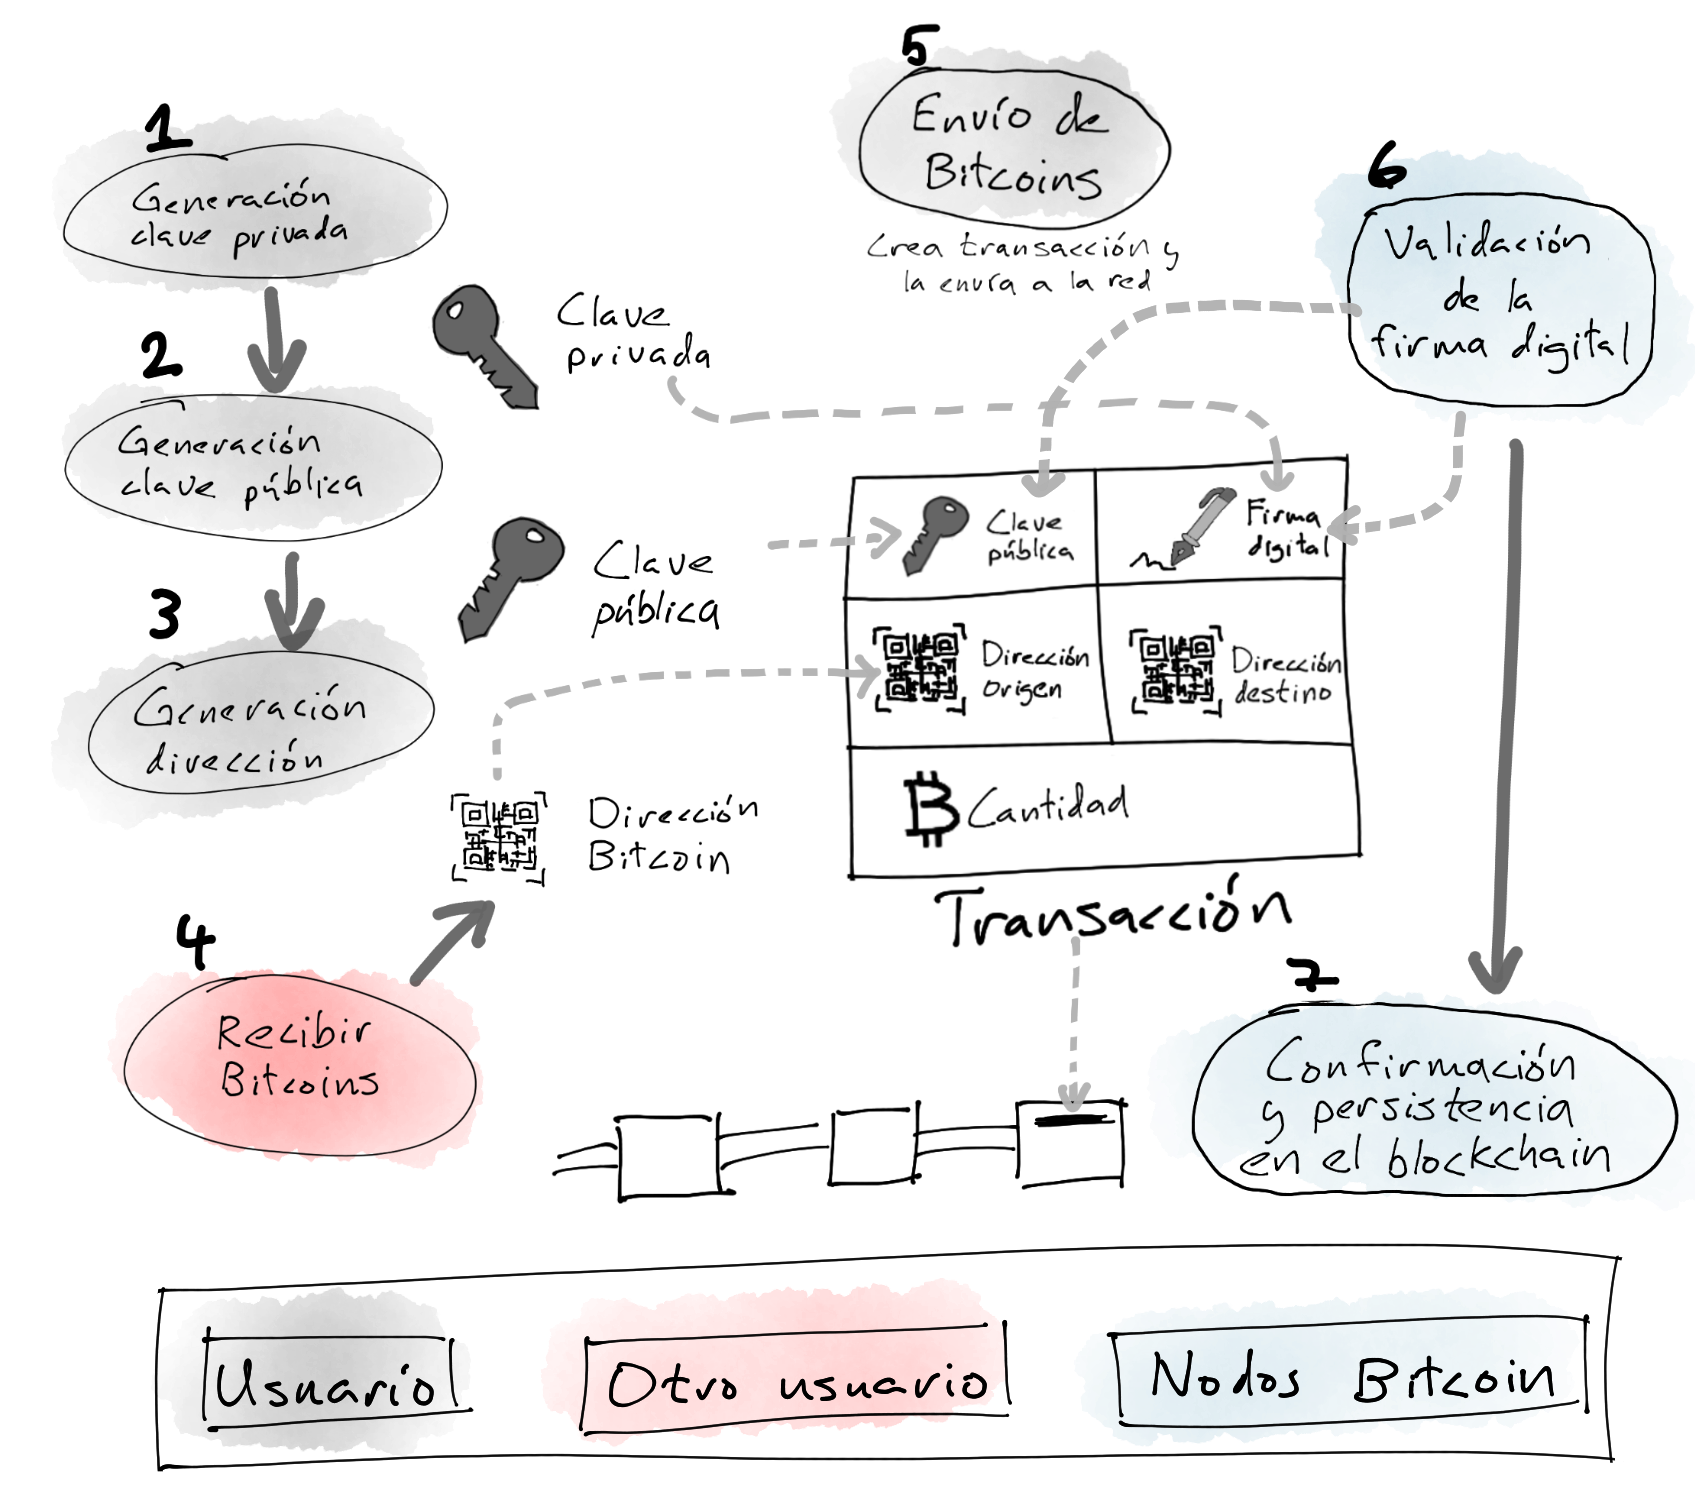 Diagrama workflow básico de creación y uso de una cuenta en Bitcoin